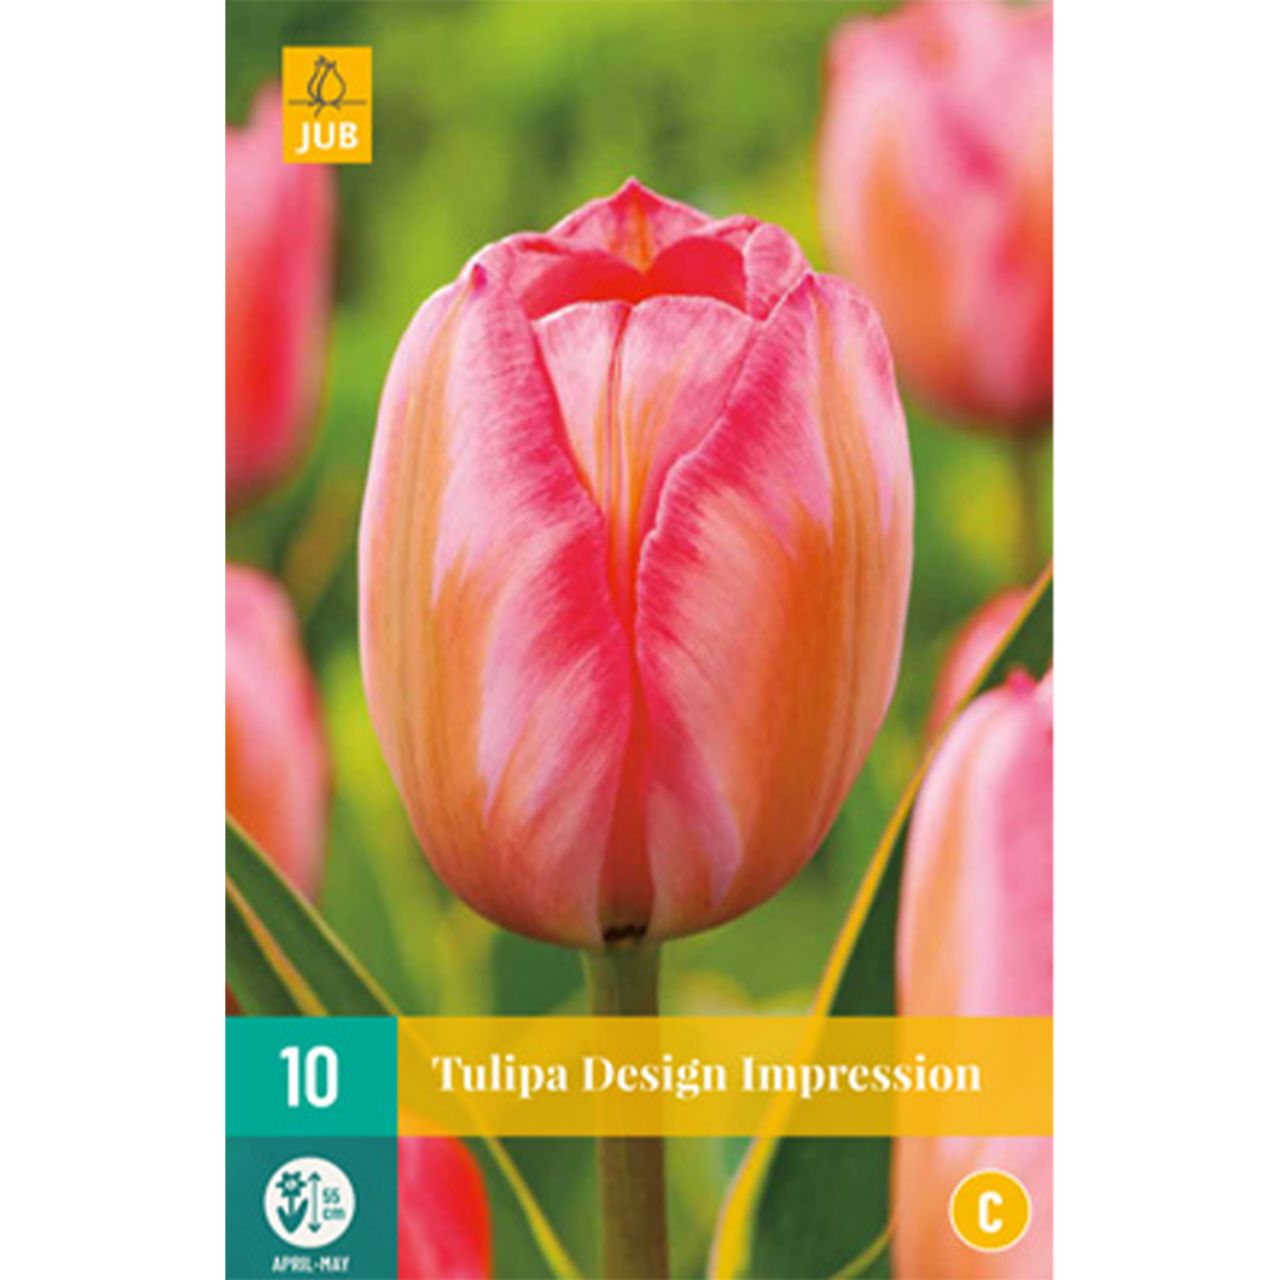 Kategorie <b>Herbst-Blumenzwiebeln </b> - Darwin-Hybrid Tulpe 'Design Impression' - 10 Stück - Tulipa 'Design Impression'